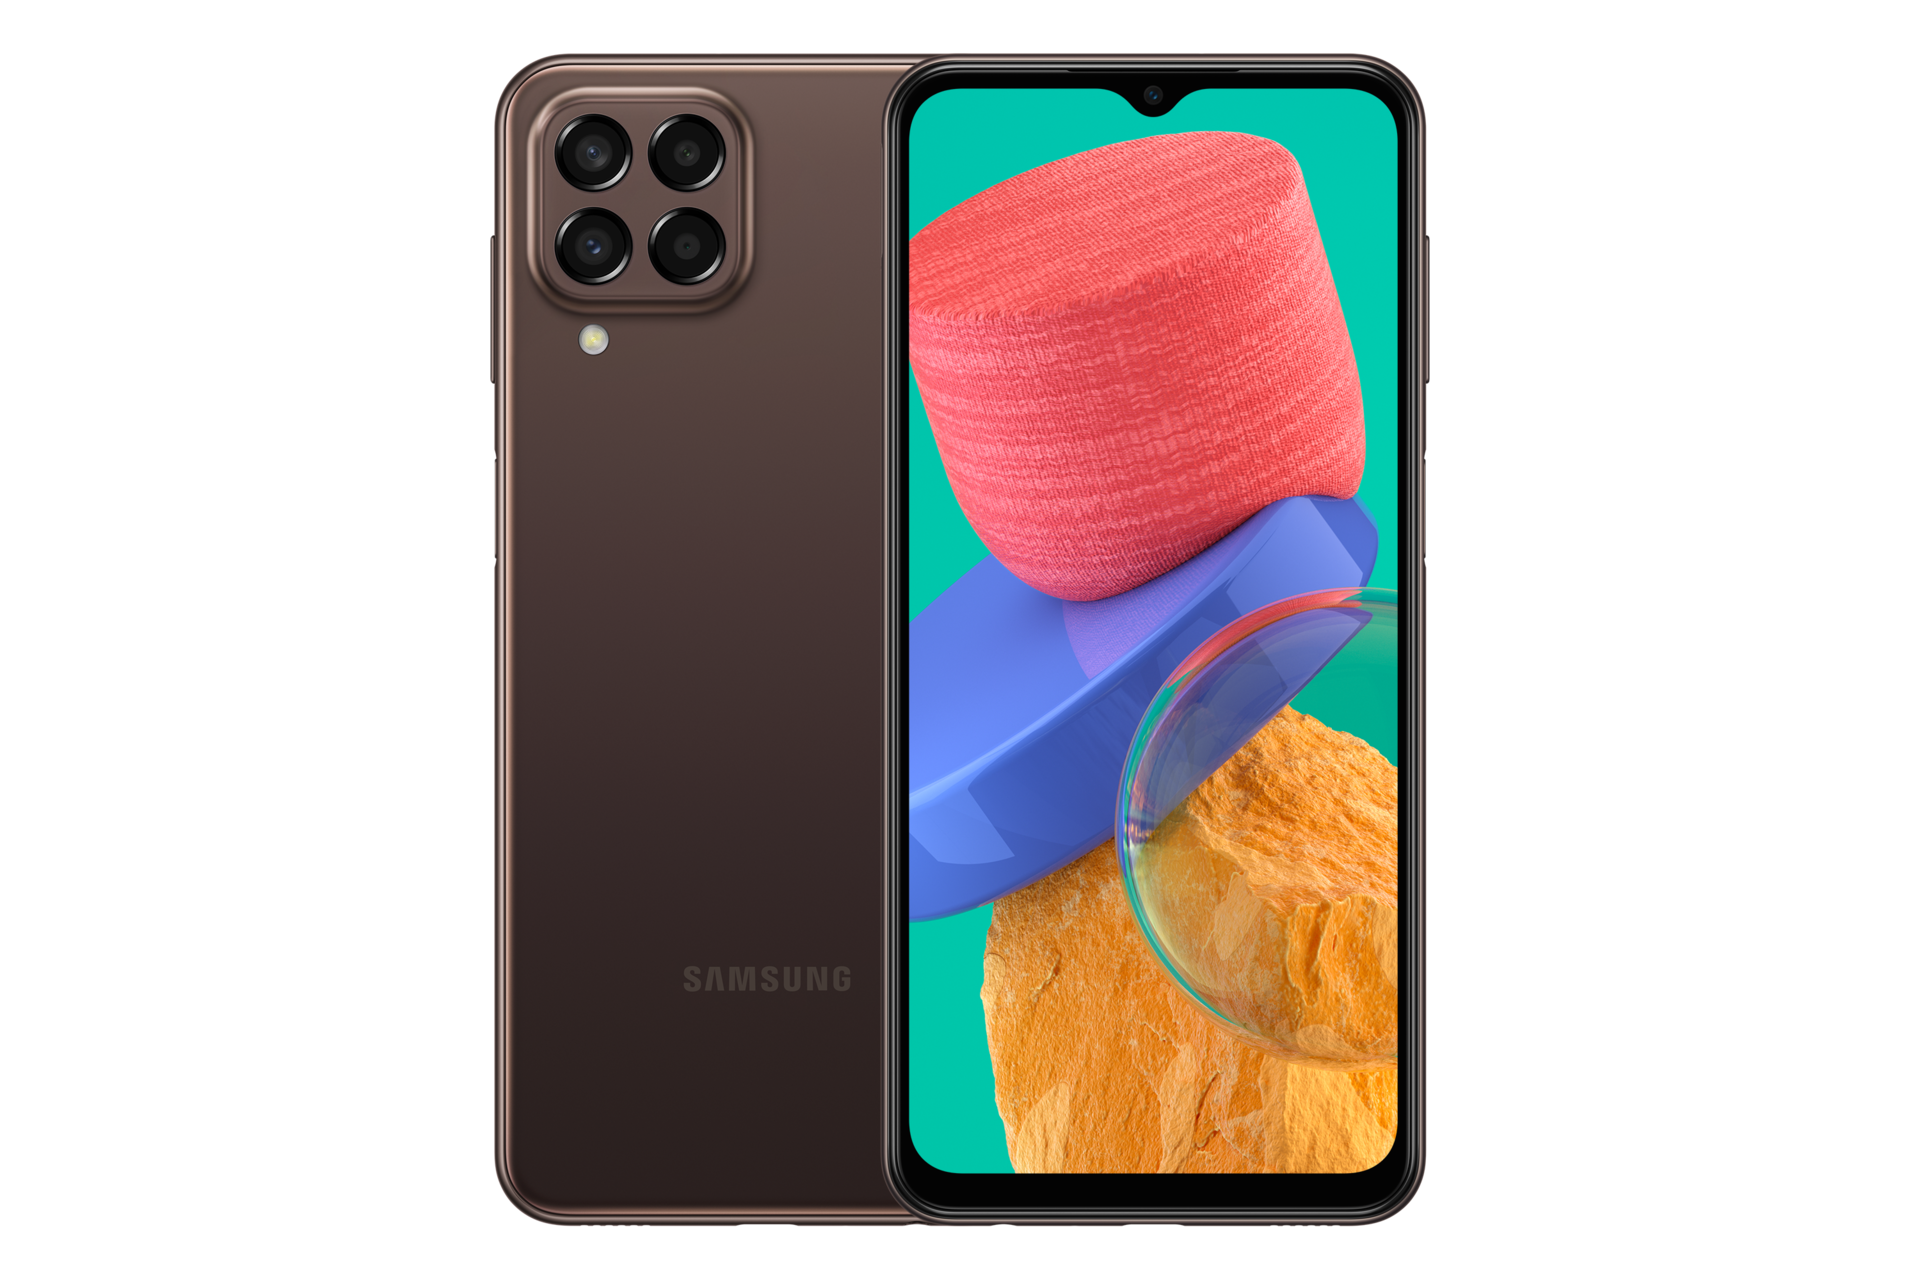 Bạn muốn sở hữu một chiếc điện thoại với tính năng 5G tuyệt vời? Samsung Galaxy M33 5G sẽ là sự lựa chọn tuyệt vời dành cho bạn. Với cấu hình mạnh mẽ, camera đẹp và nhiều tính năng thông minh, bạn sẽ không bao giờ hối hận khi sử dụng chiếc điện thoại này. Hãy cùng khám phá và trải nghiệm Samsung Galaxy M33 5G.